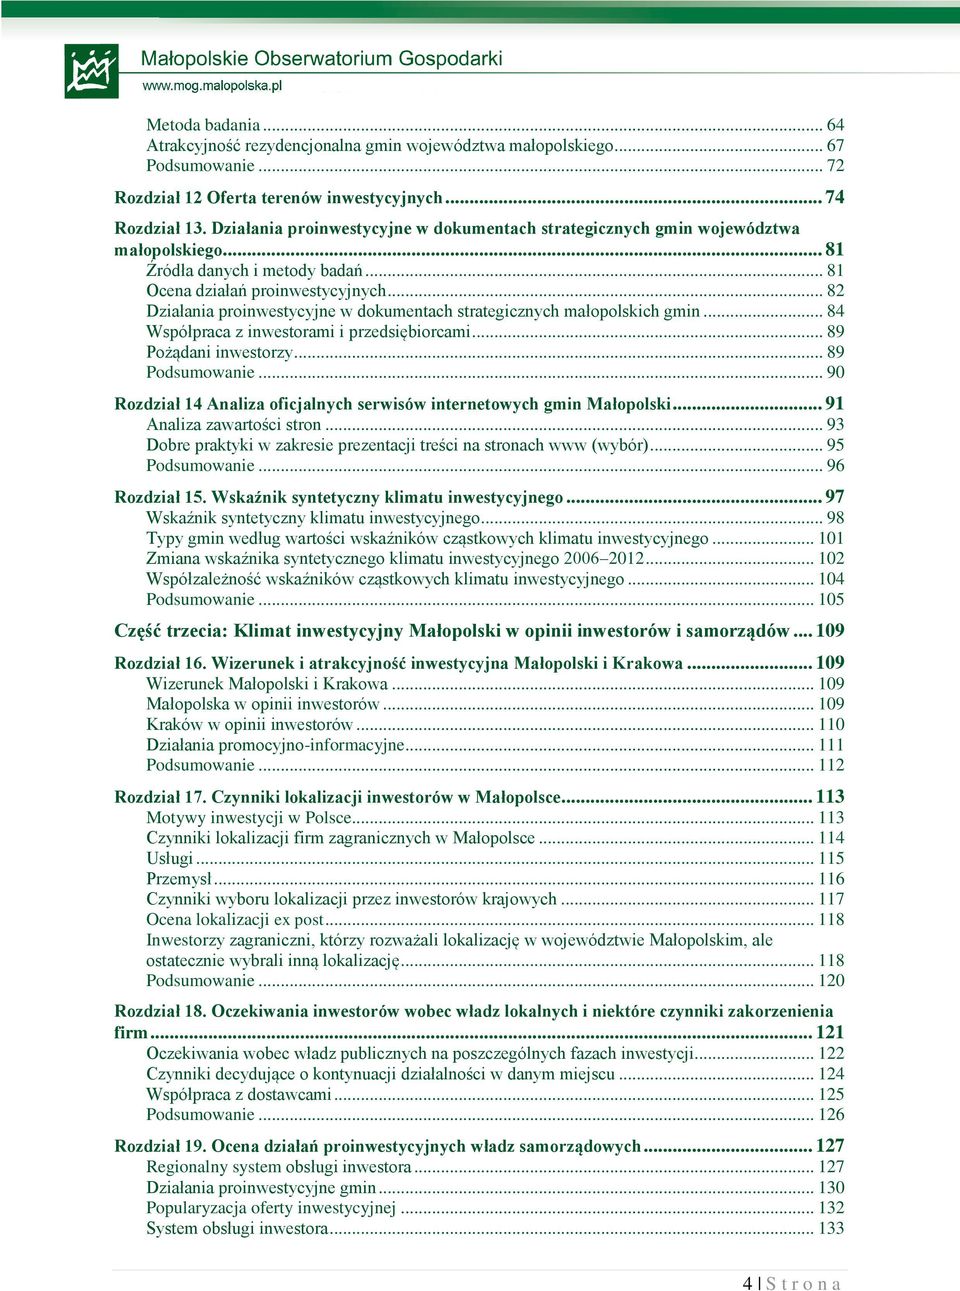 .. 82 Działania proinwestycyjne w dokumentach strategicznych małopolskich gmin... 84 Współpraca z inwestorami i przedsiębiorcami... 89 Pożądani inwestorzy... 89 Podsumowanie.